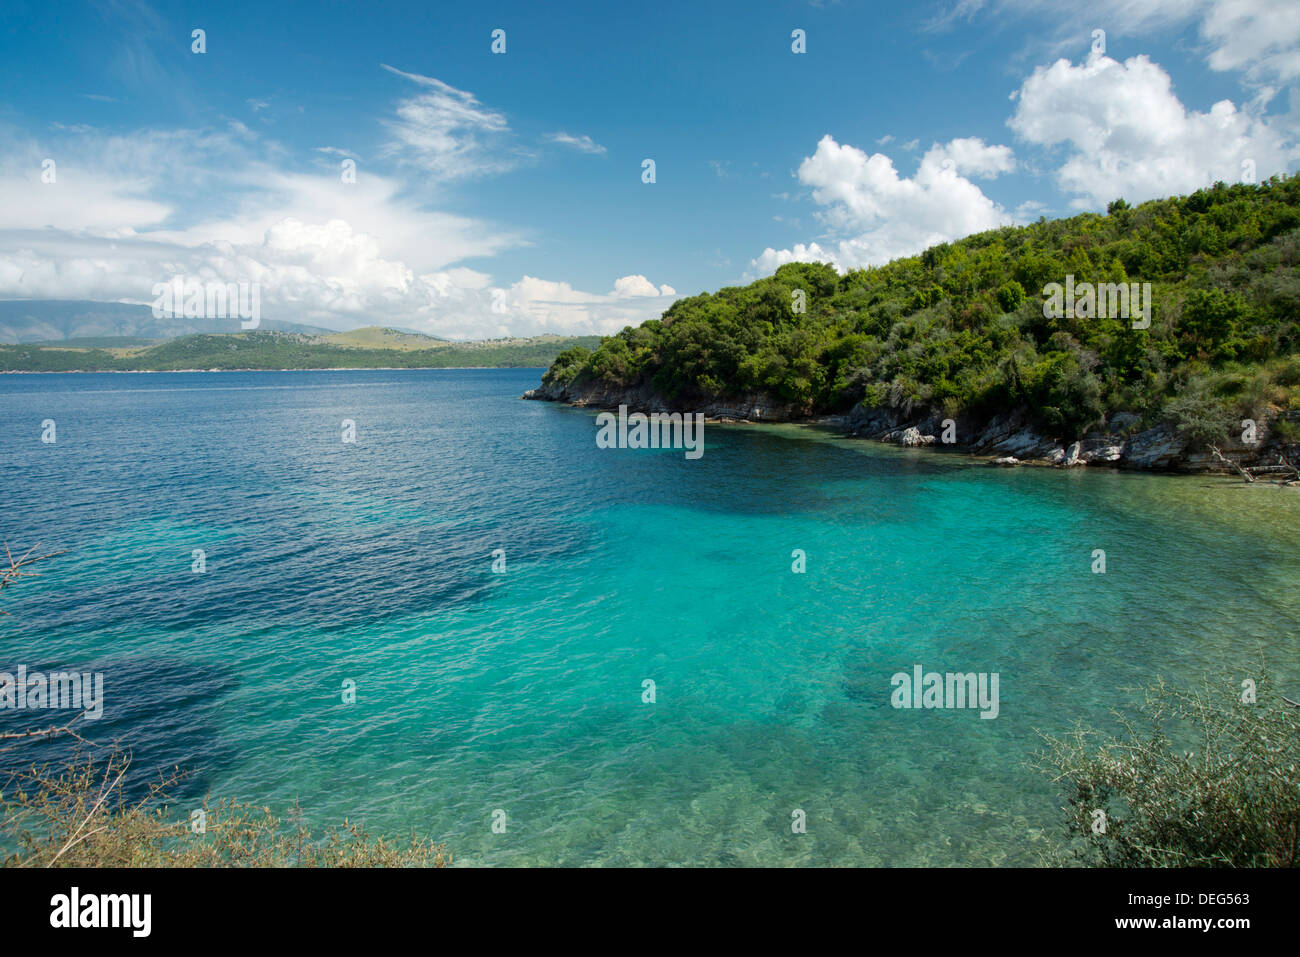 Eine kleine Bucht in der Nähe der Stadt Agios Stefanos auf der nordöstlichen Küste von Korfu, Ionische Inseln, griechische Inseln, Griechenland, Europa Stockfoto